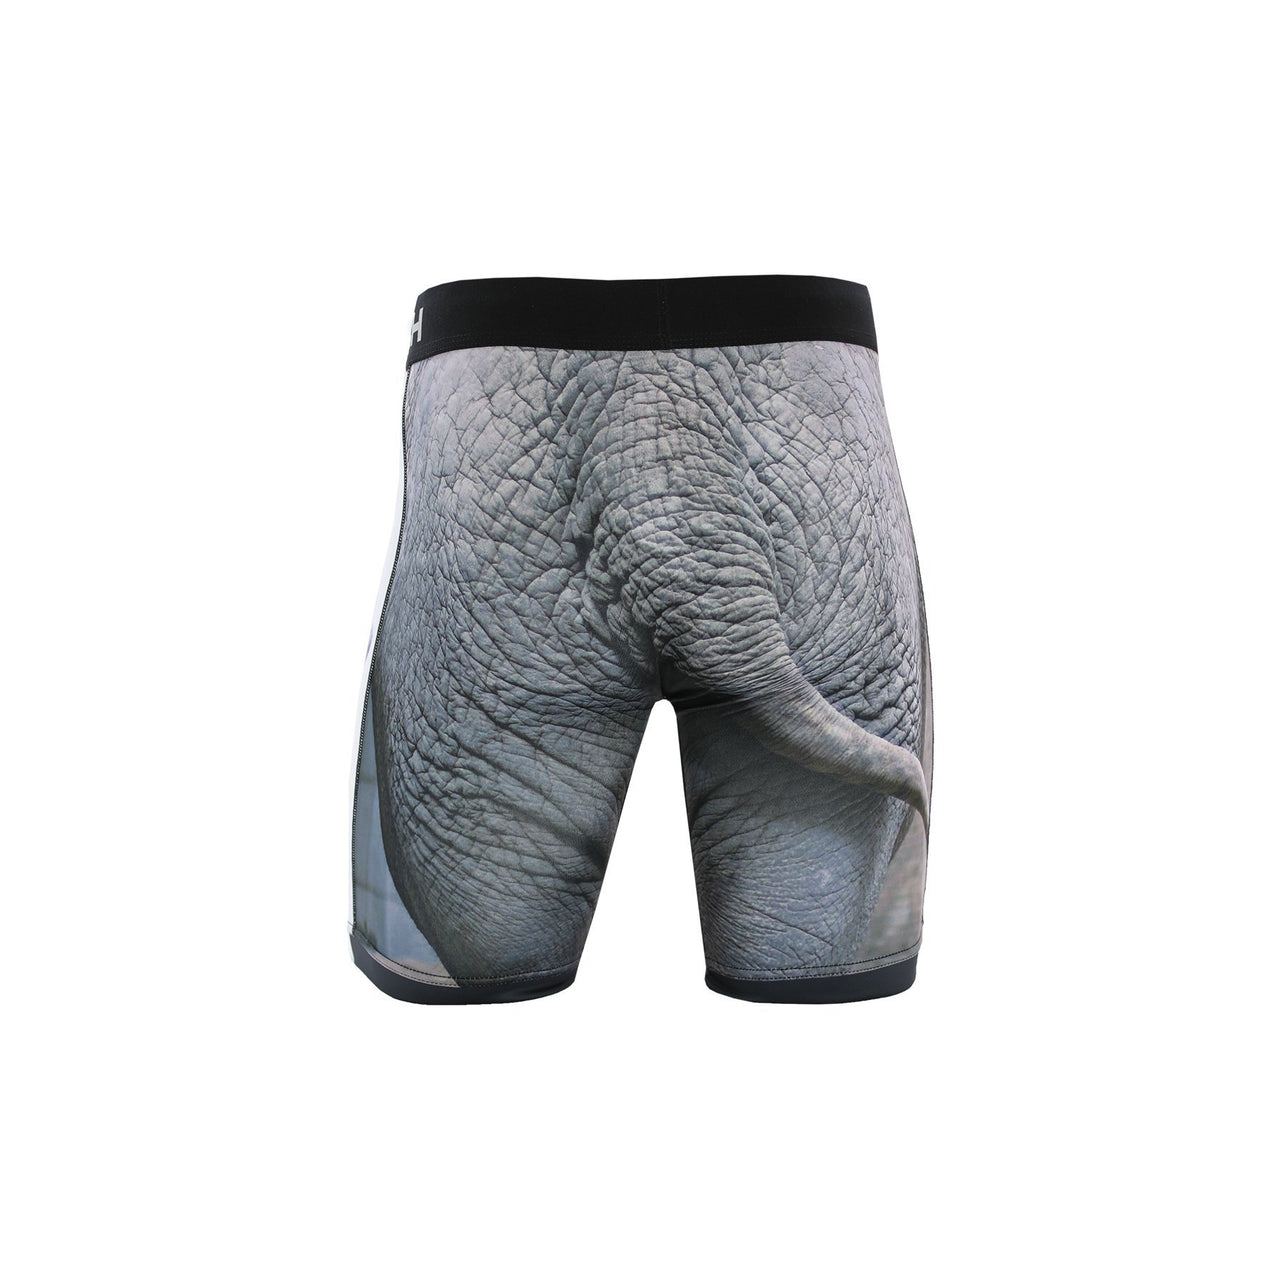 Cinch Men's 9" Elephant Boxer Briefs - Multi